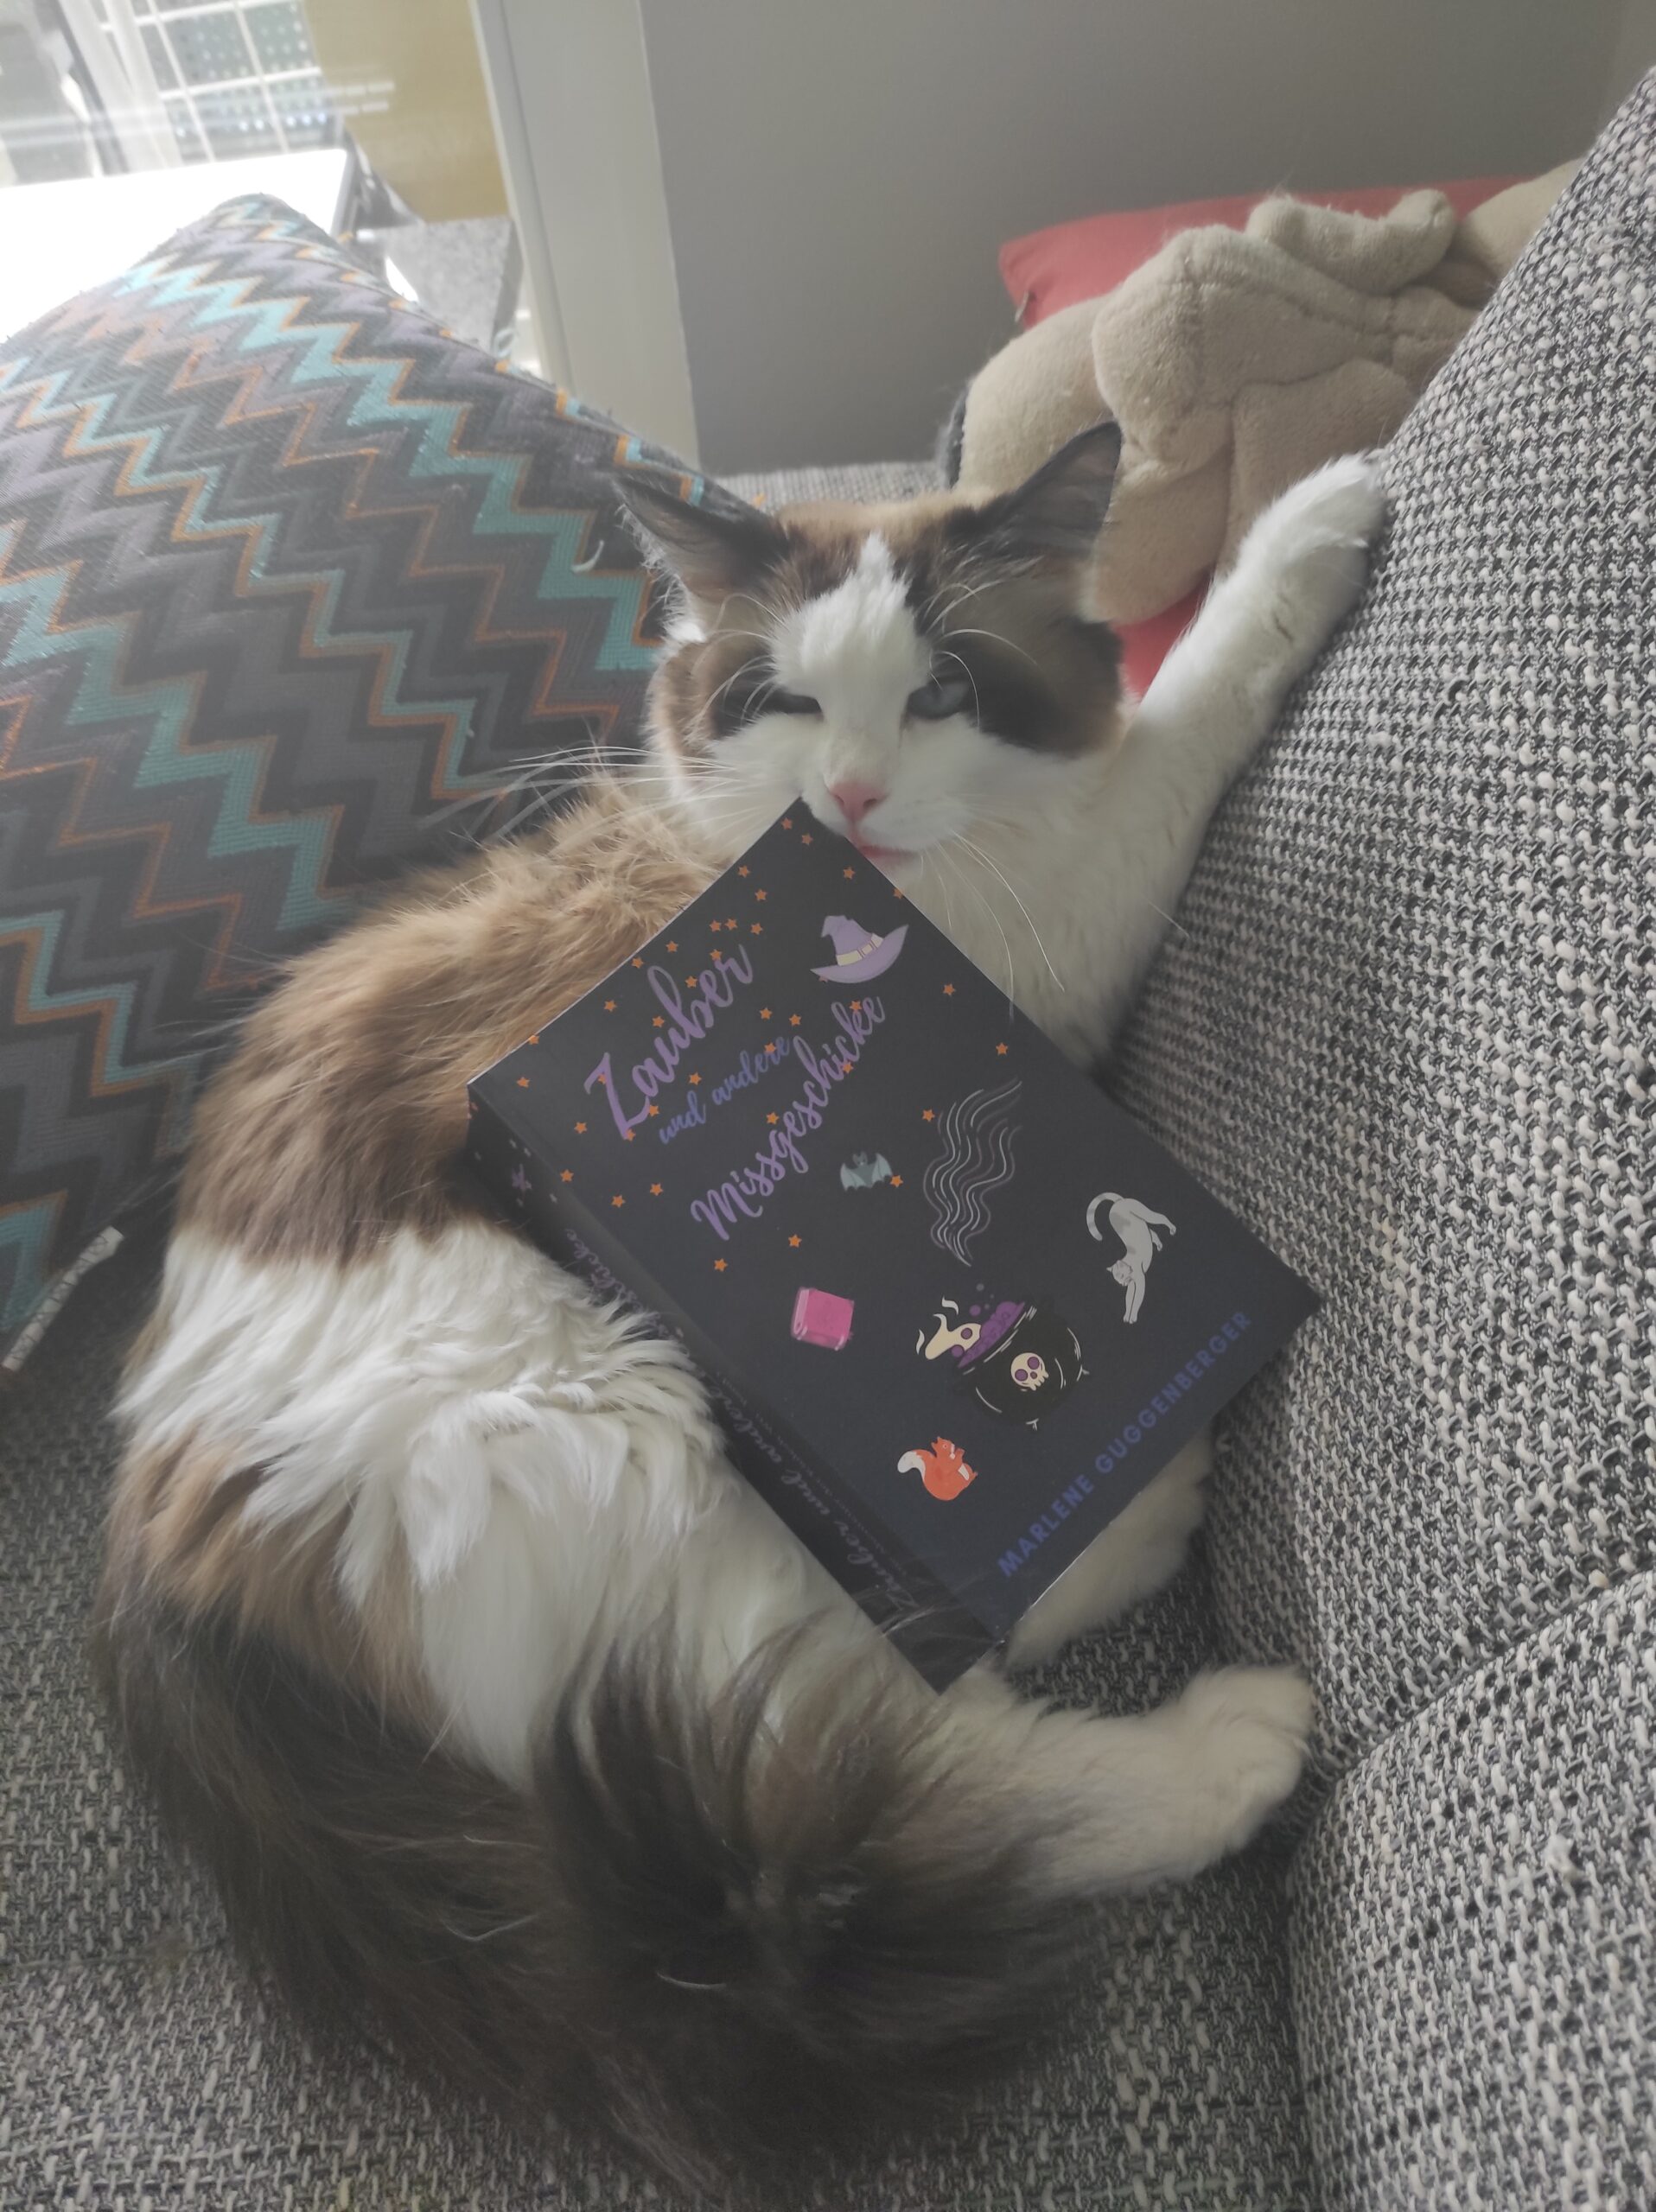 Das erste Buch "Zauber und andere Missgeschicke" der Autorin Marlene Guggenberger liegt auf ihrer weiß und braun gemusterten Katze Ylvi